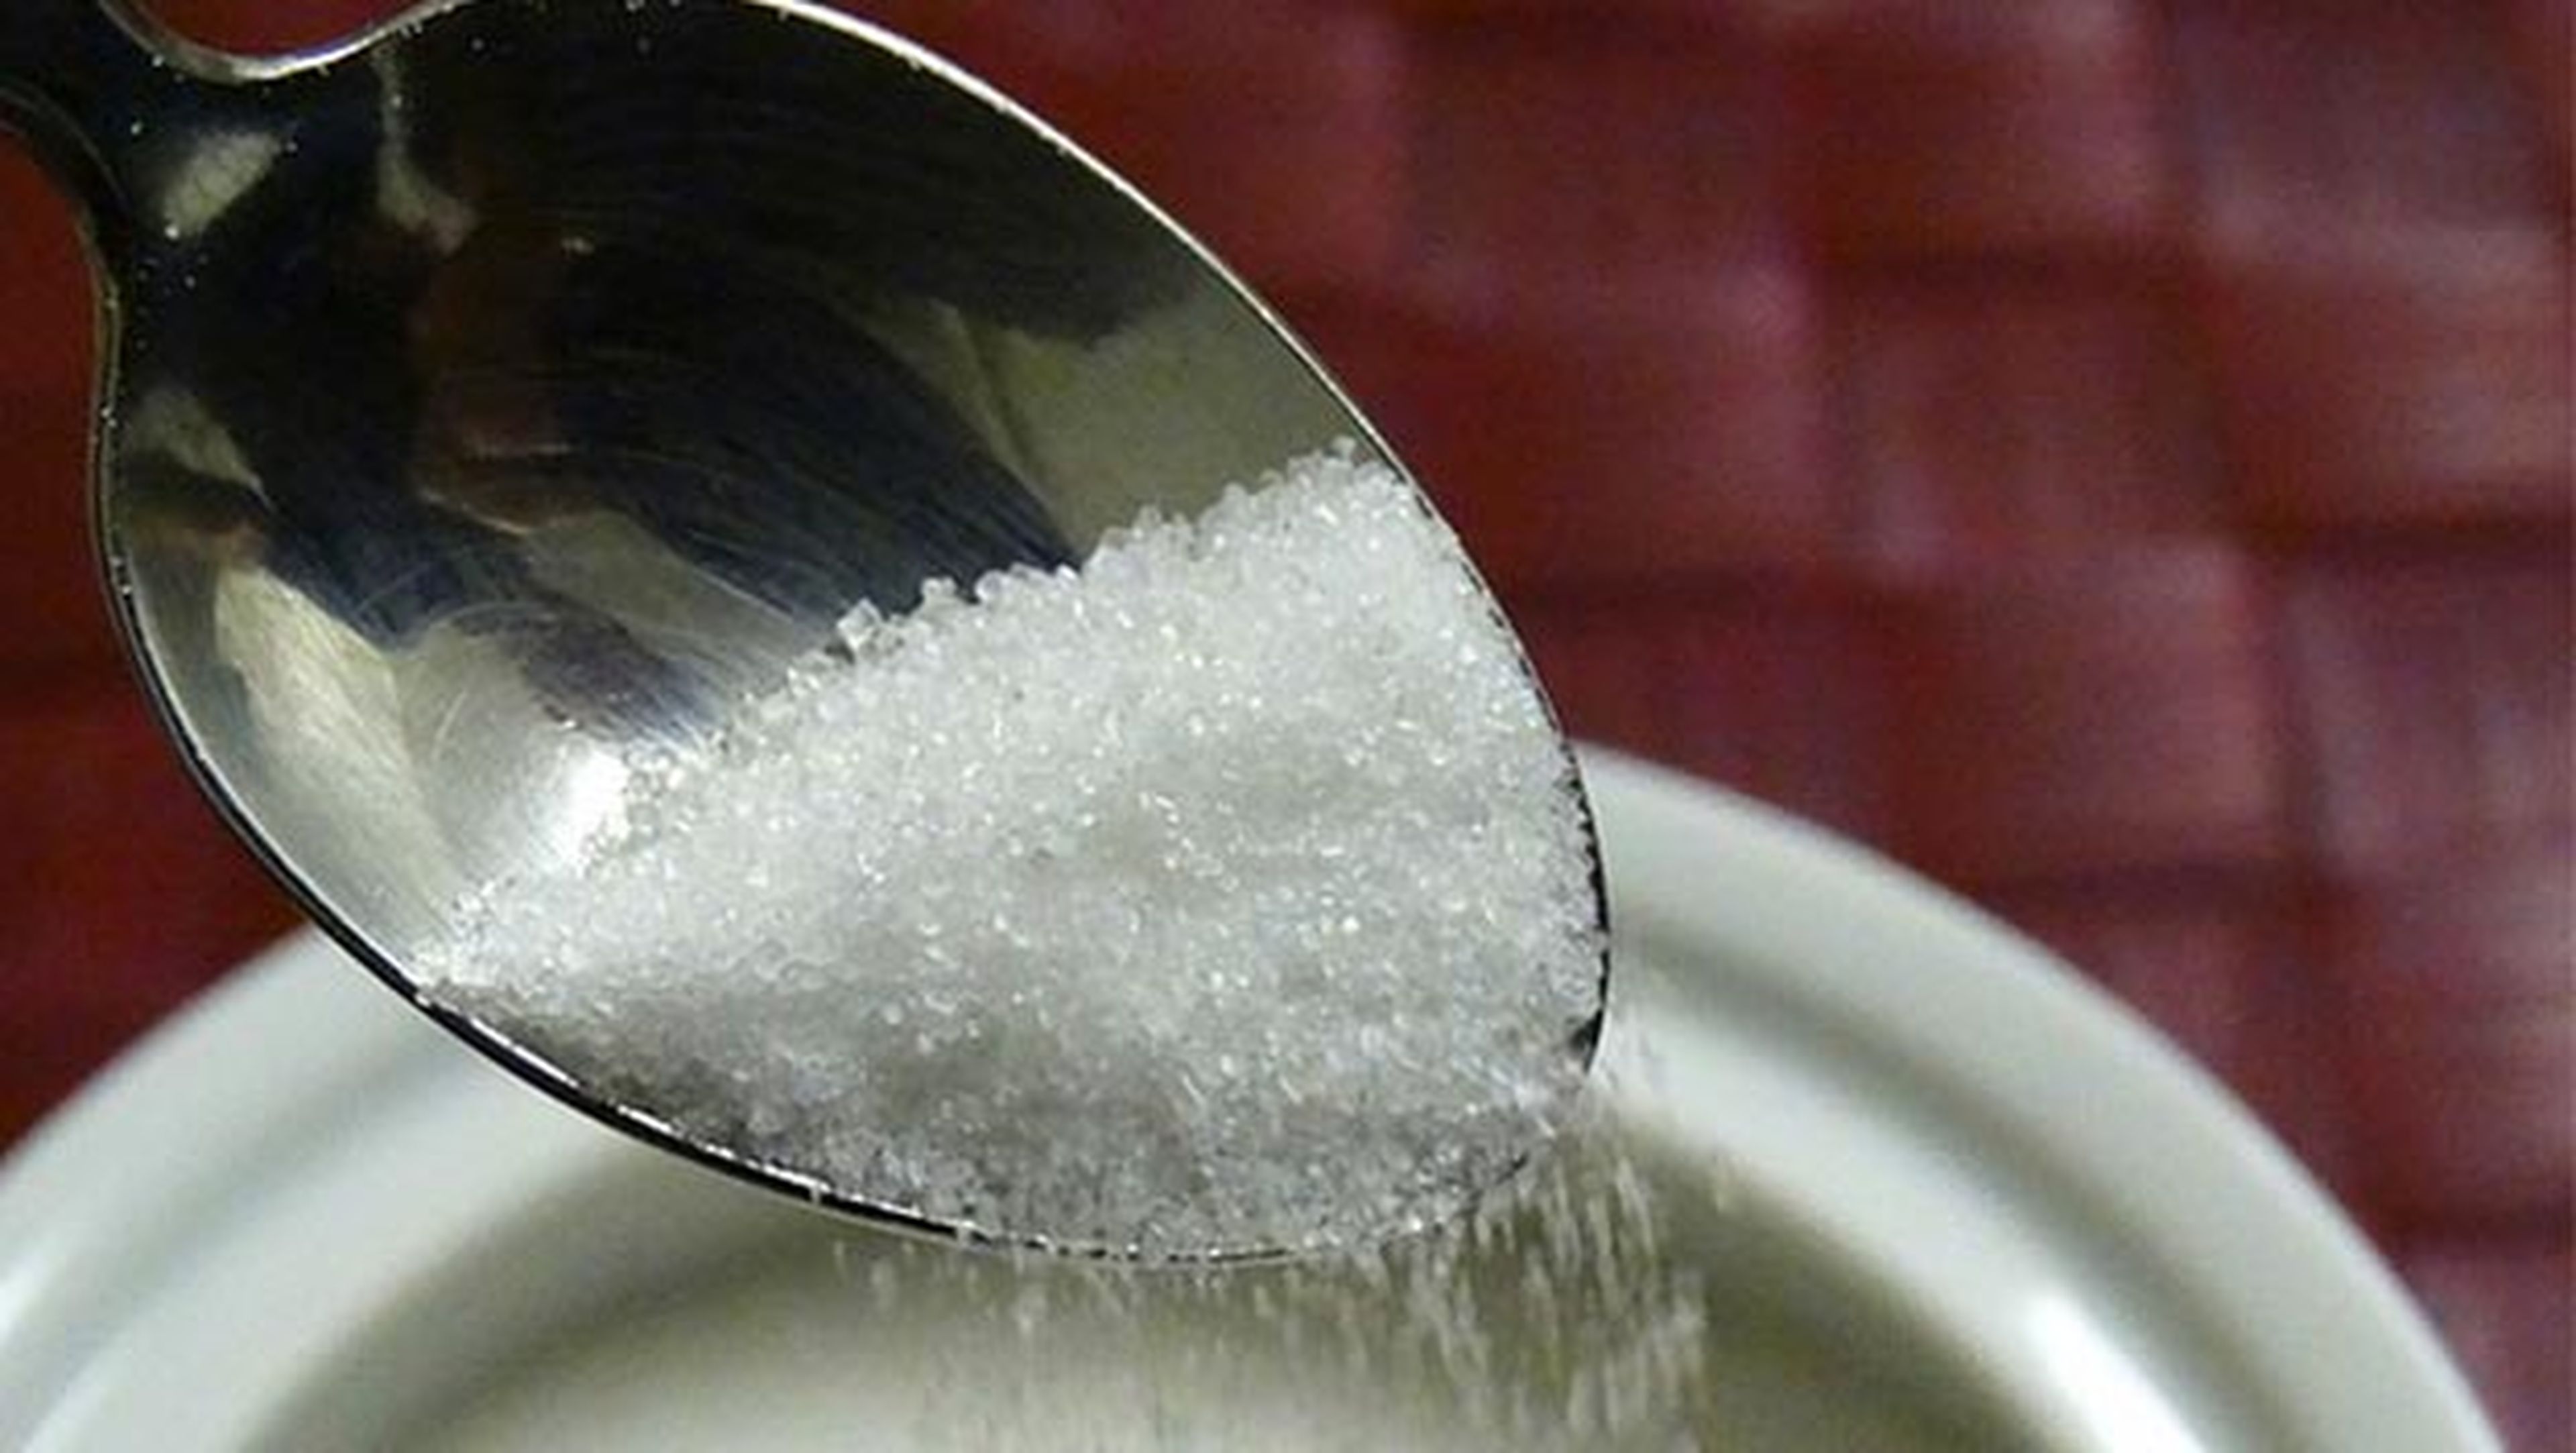 OMS sugiere no superar 12 cucharillas azúcar día